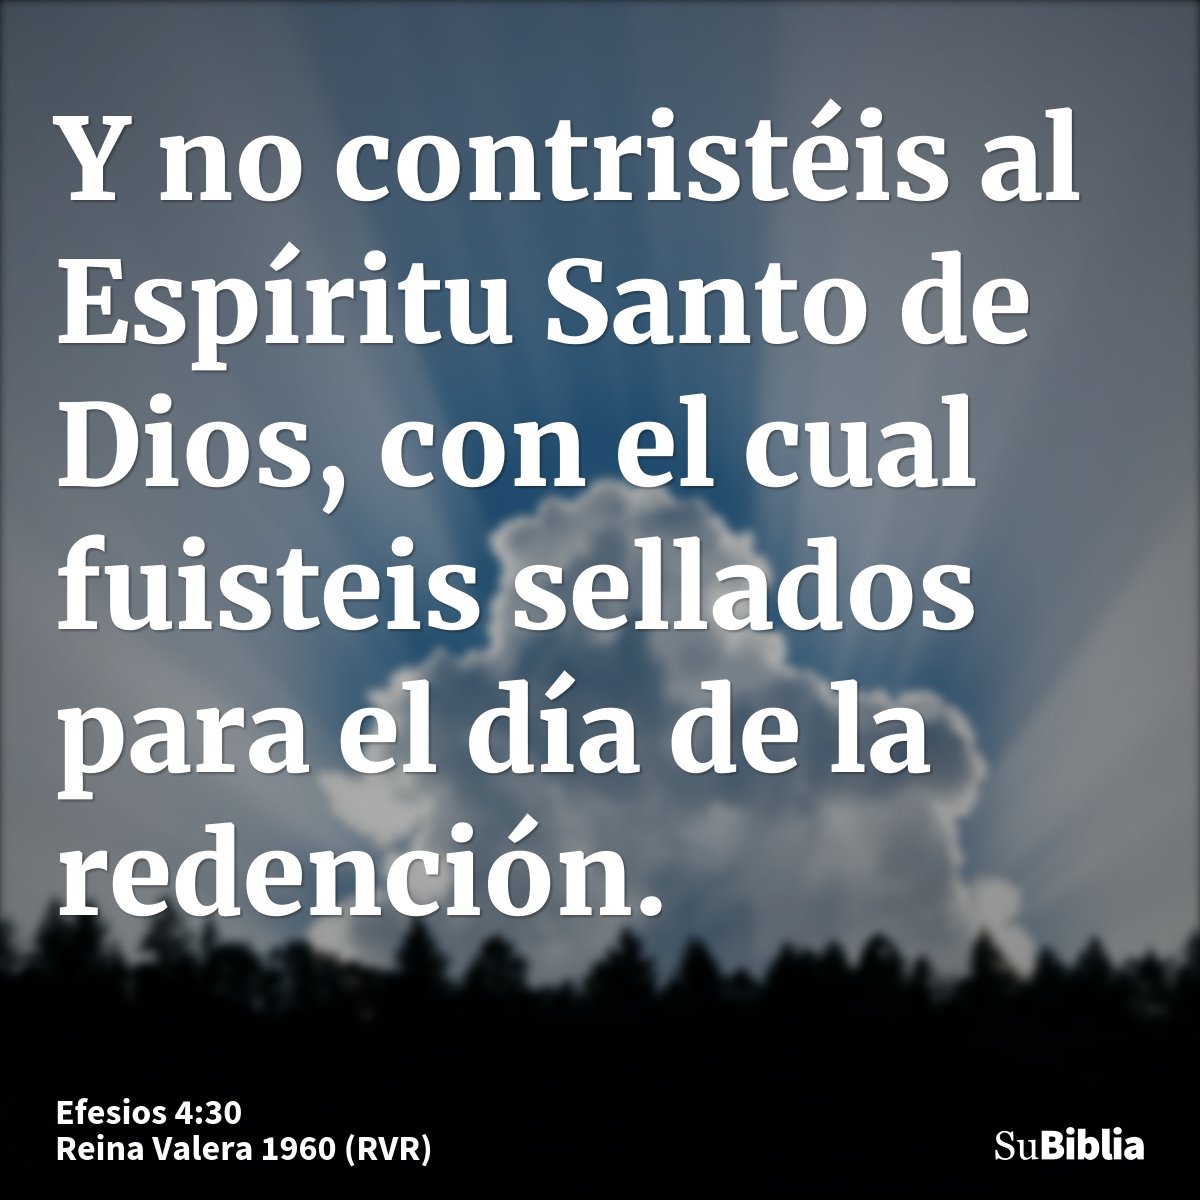 Y no contristéis al Espíritu Santo de Dios, con el cual fuisteis sellados para el día de la redención.